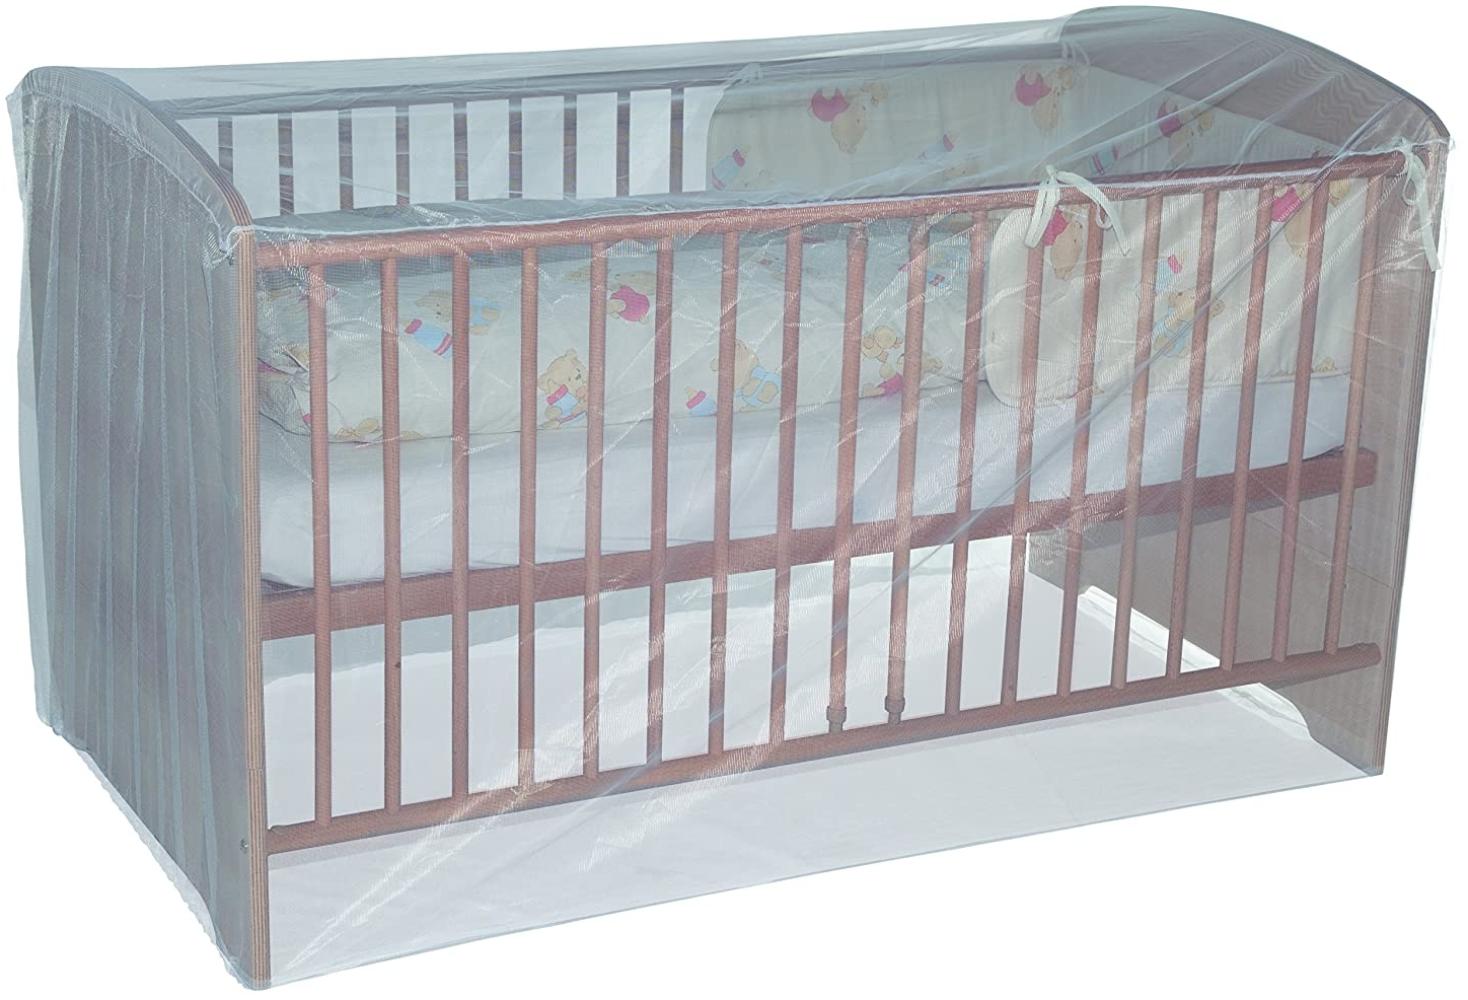 Sunnybaby 10165 Insektenschutznetz für Kinderbett, 150 x 80 x 80 cm, weiß Bild 1